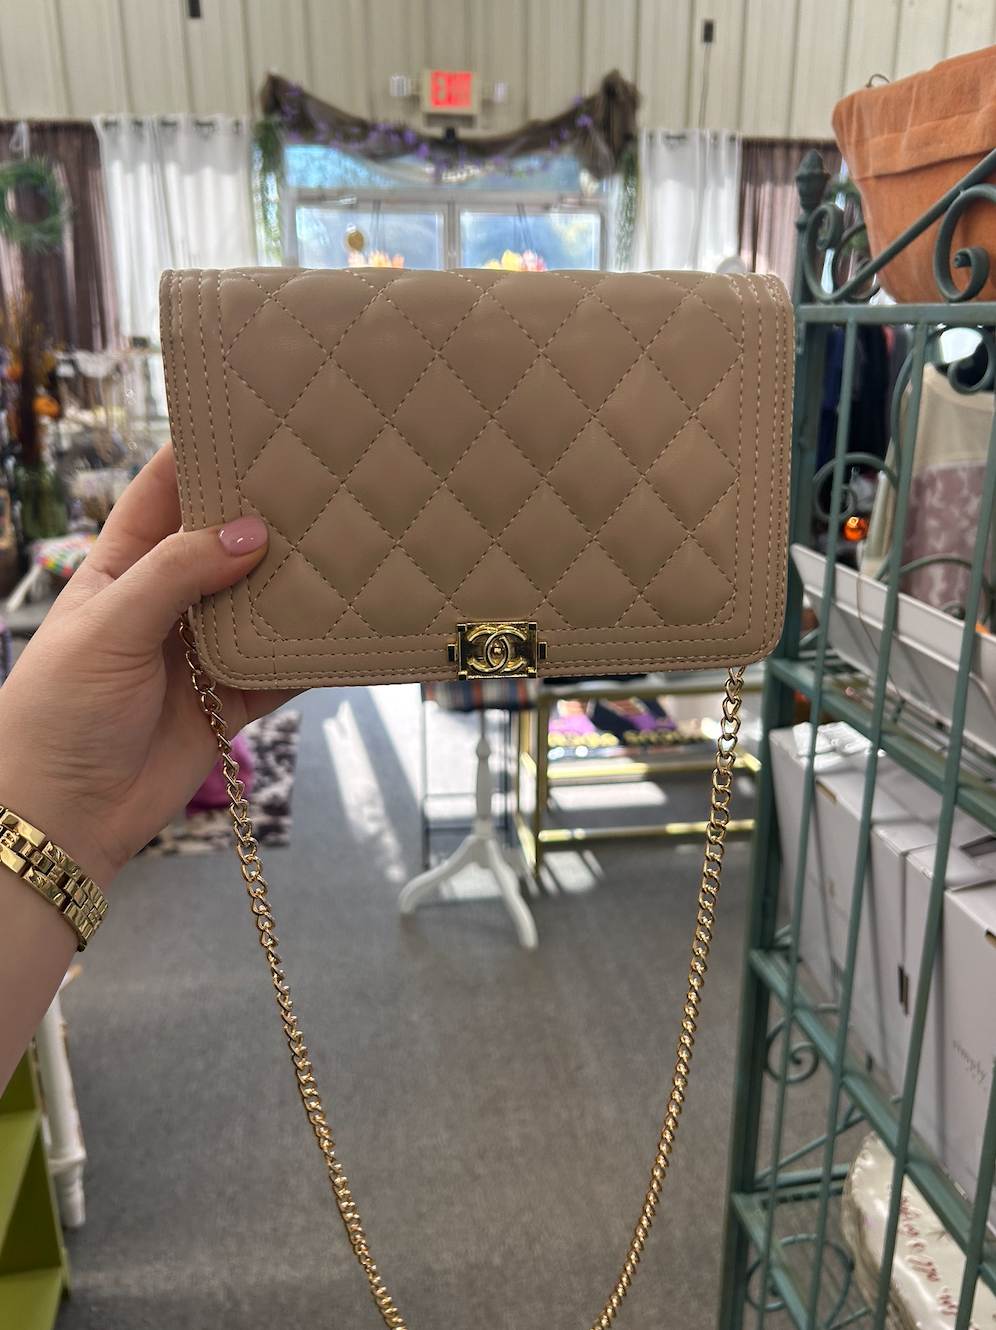 Bagged EM' Boutique - LV inspired Bag